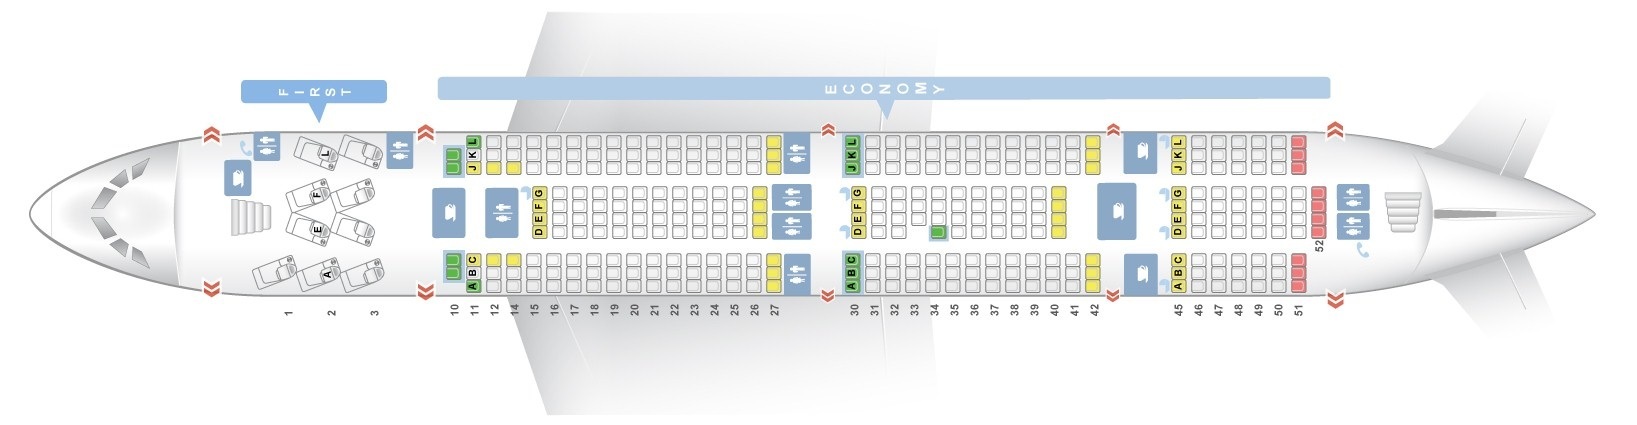 Air France A380 800 Seat Chart